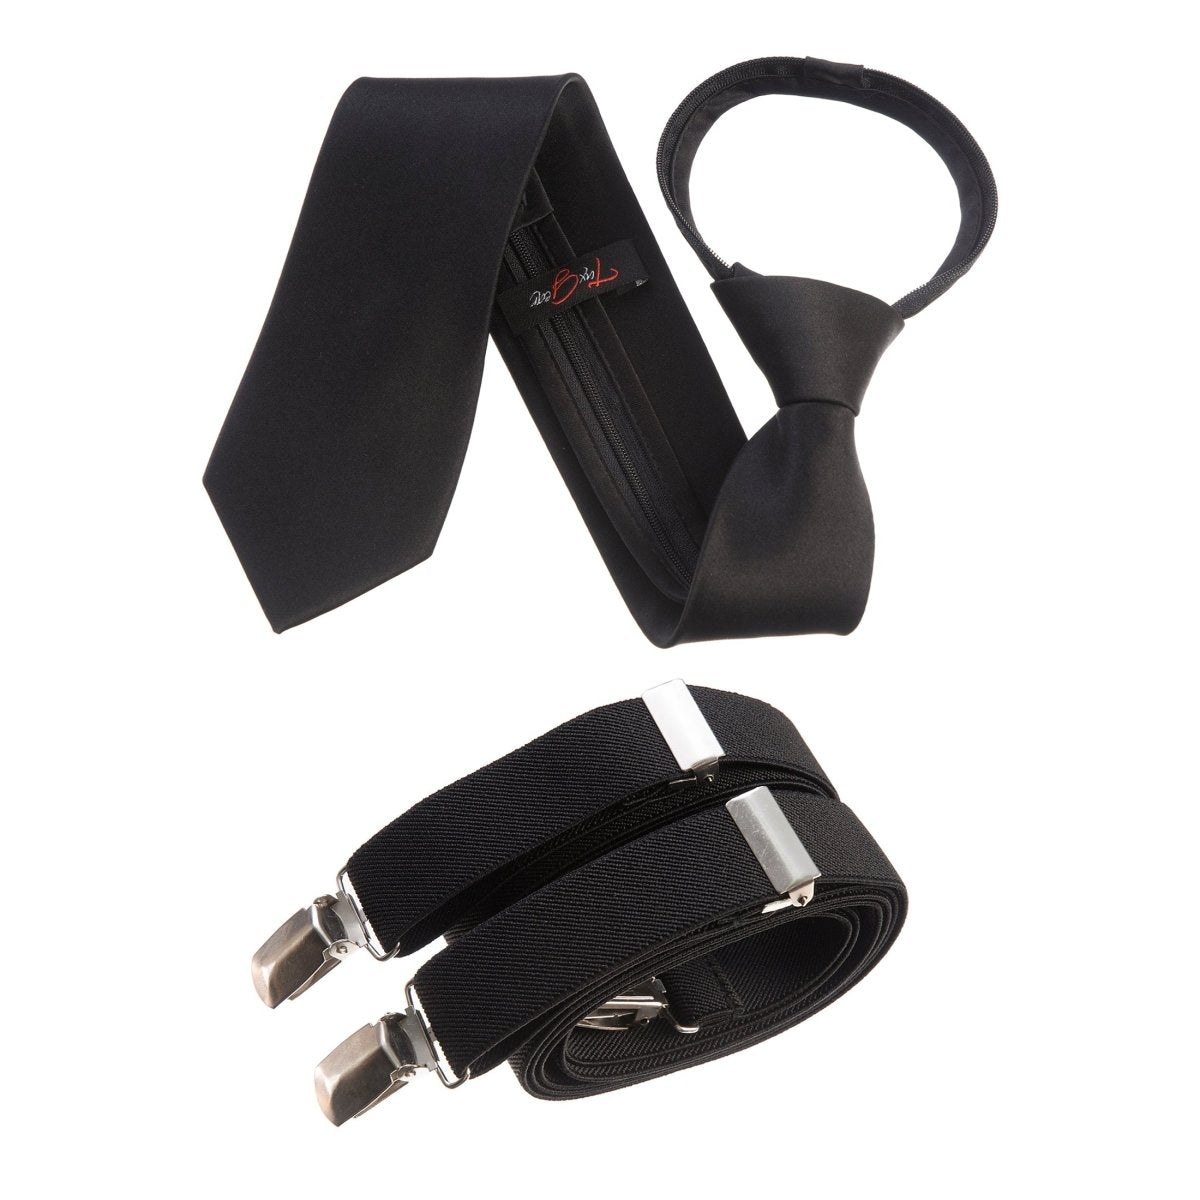 Tuxgear Neck Tie and Adjustable Stretch Suspender Set